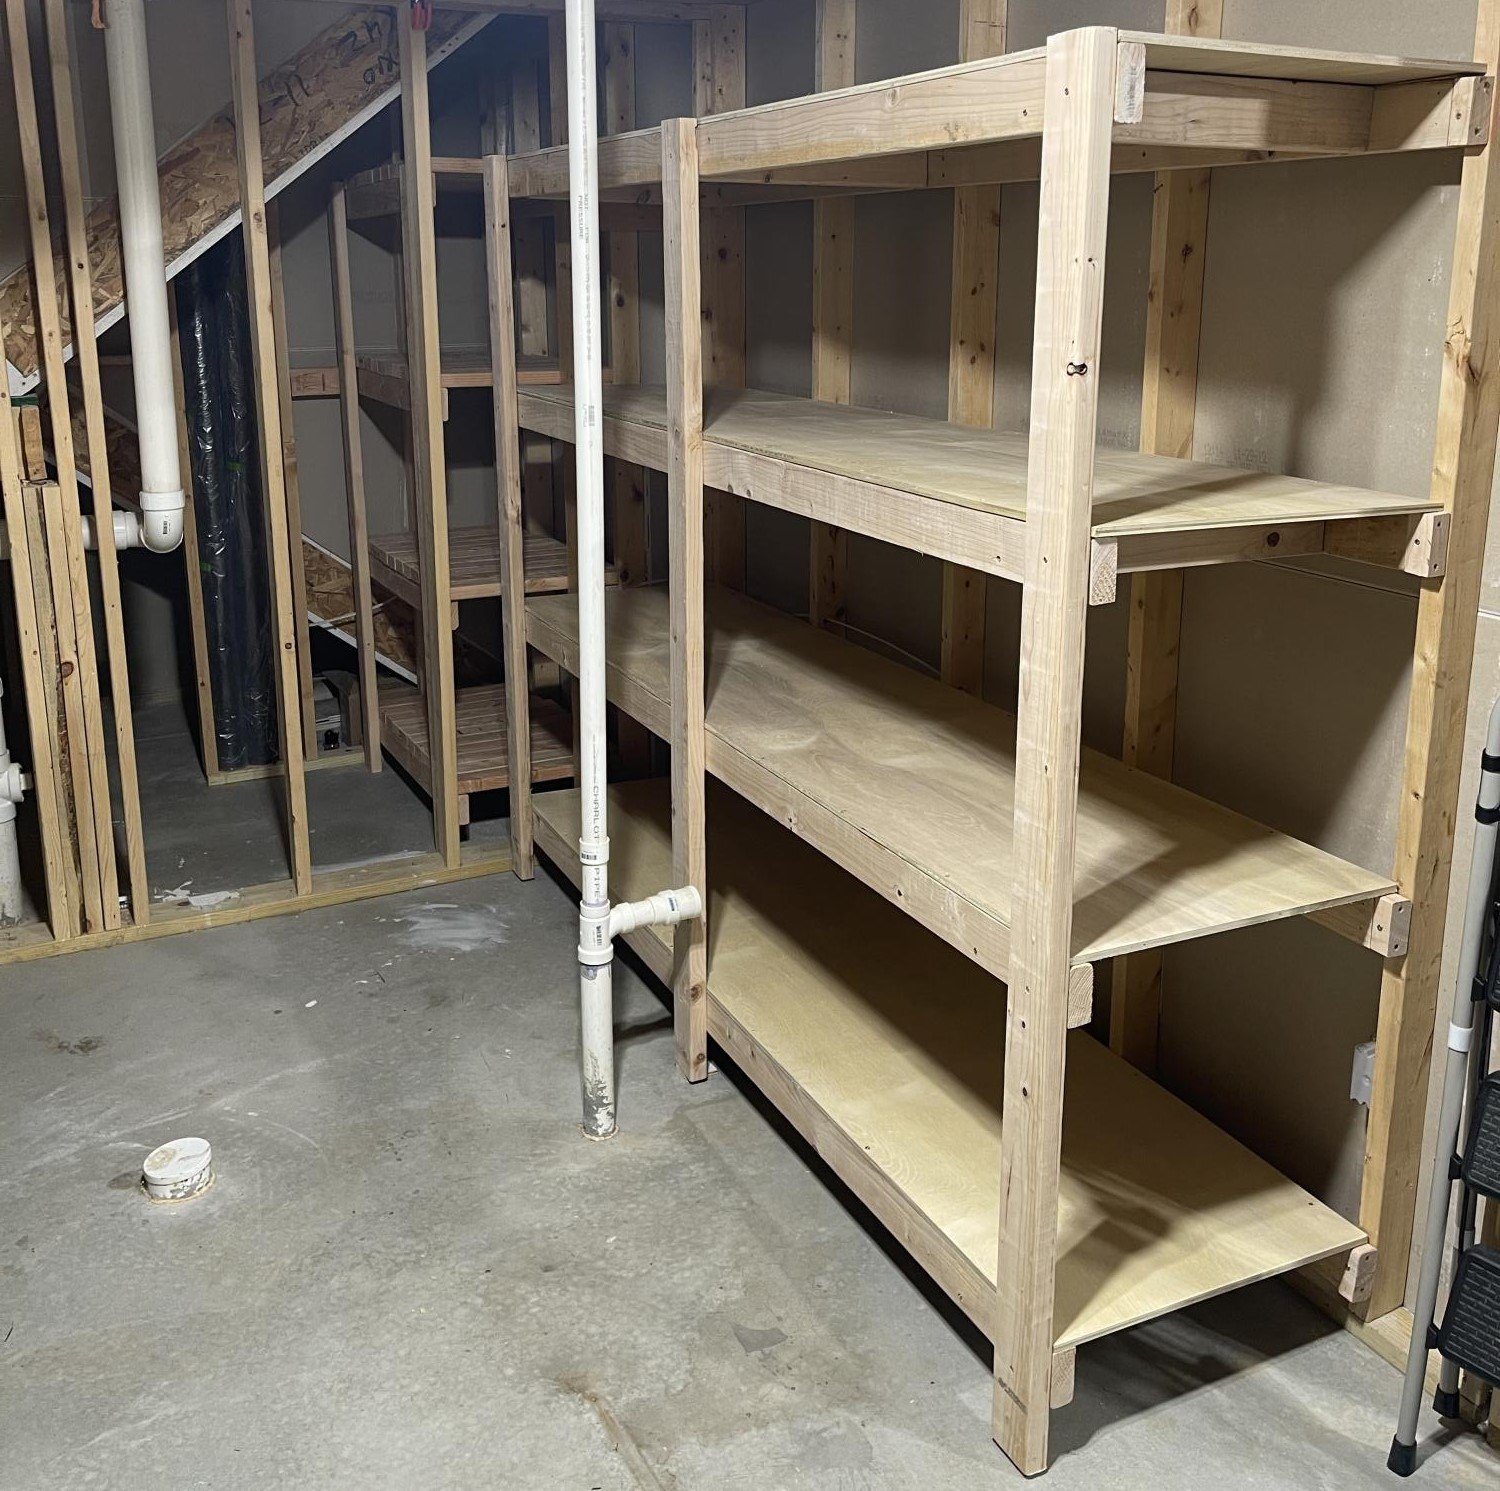 Garage / Basement Shelving + Bonus Wine/Liquor Under Stairs Storage